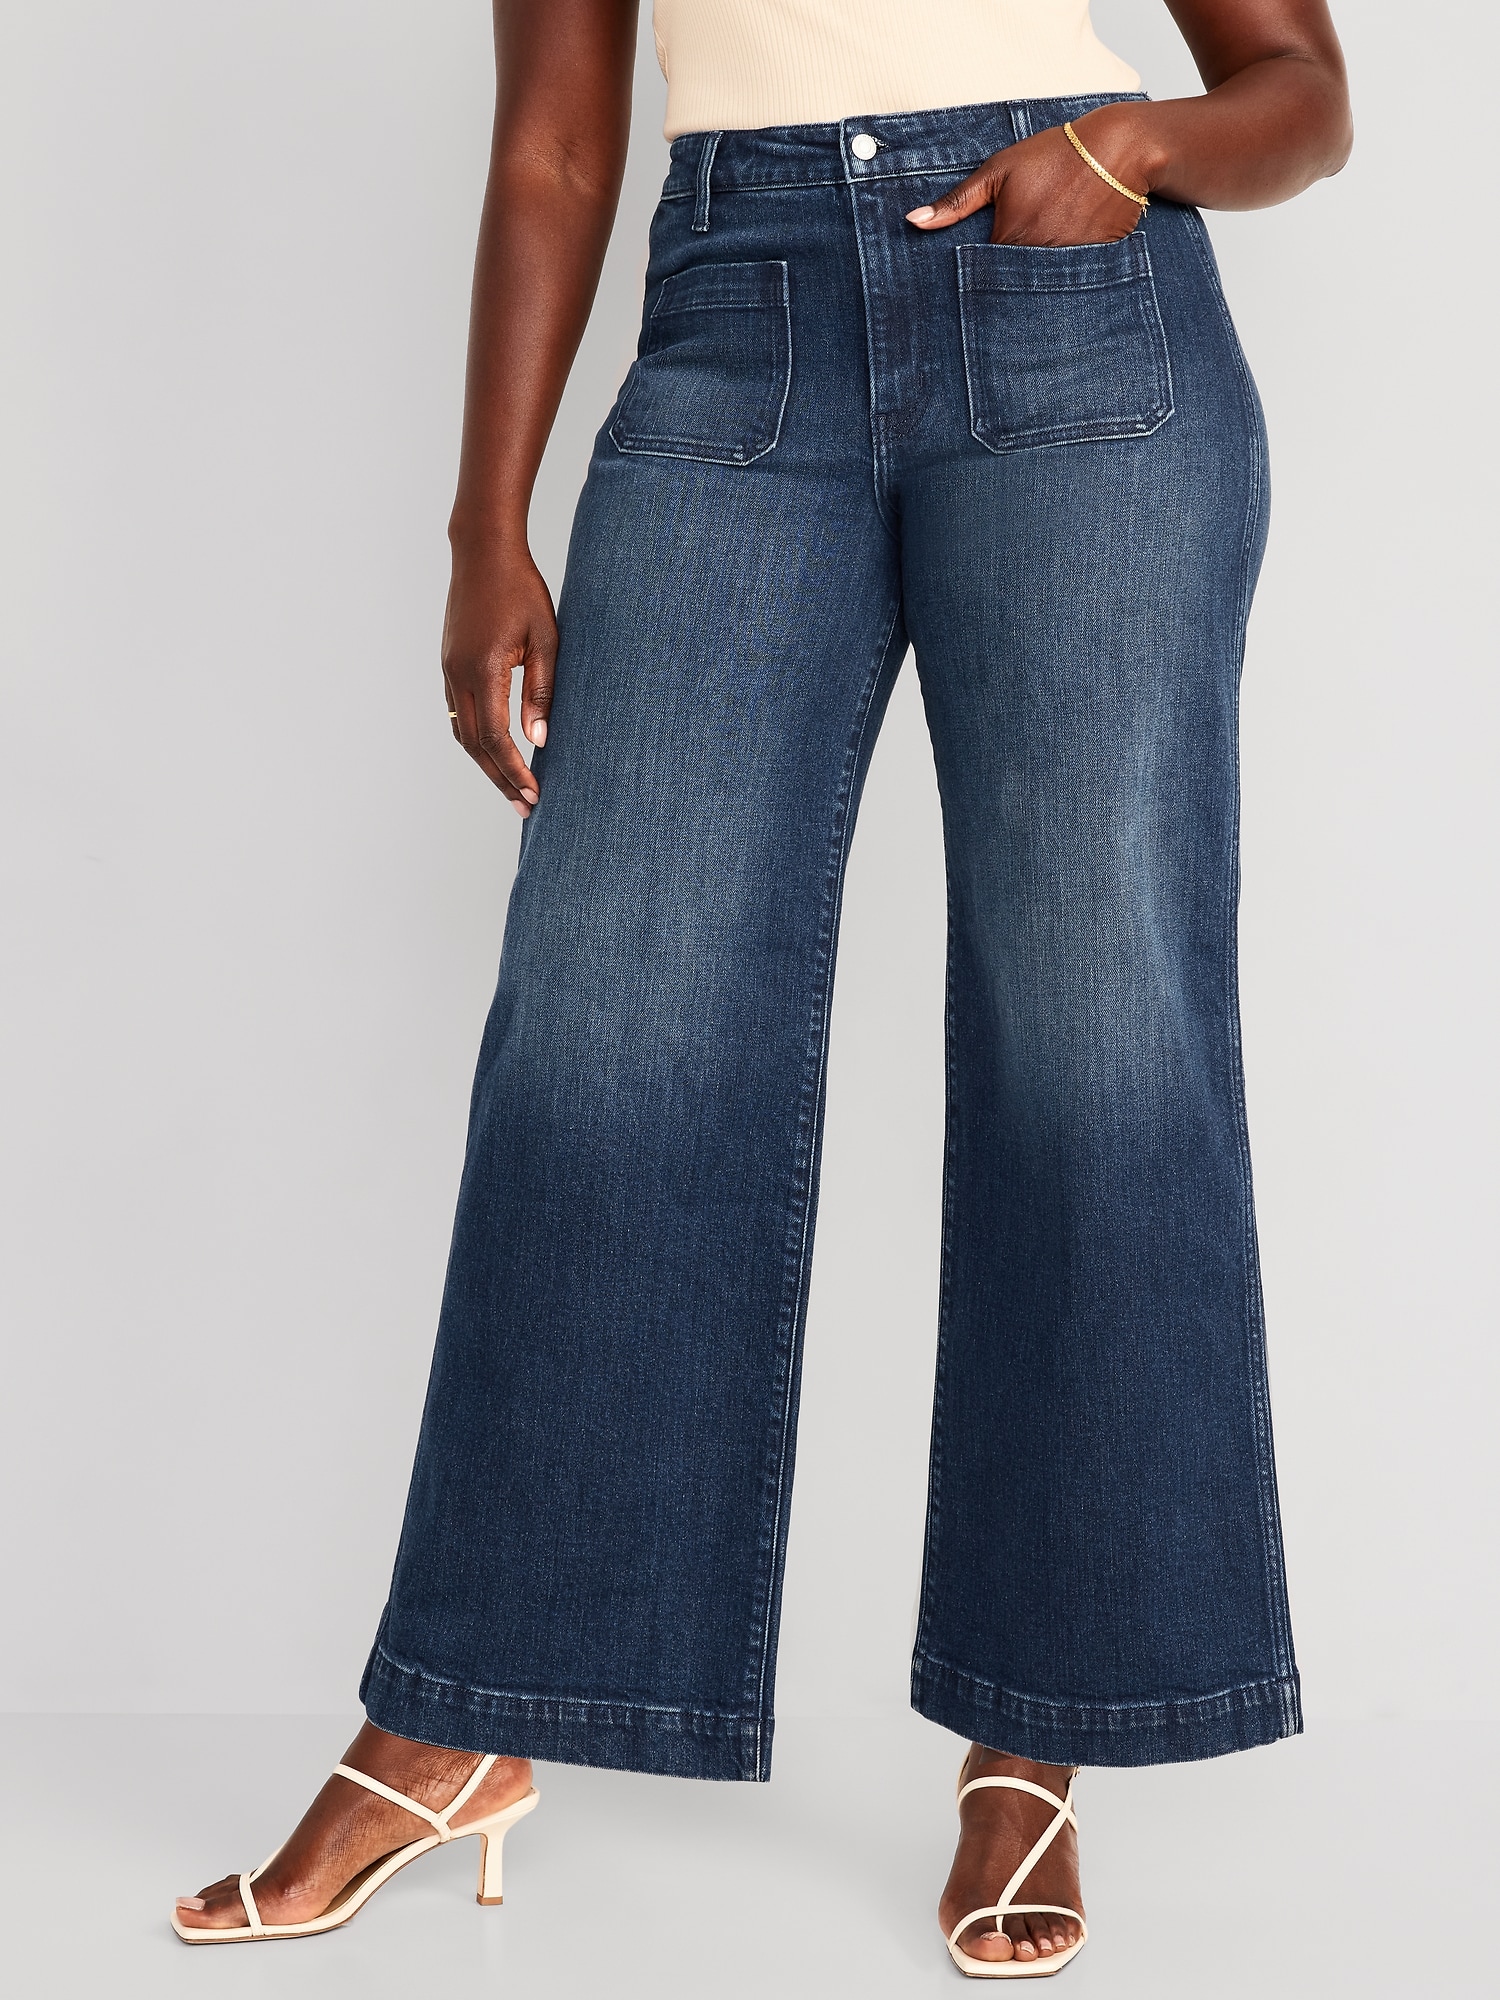 16 Jeans Suchcute High Waist Jeans Women Wide Leg Pants Plus Size Punk  Korean @ Best Price Online